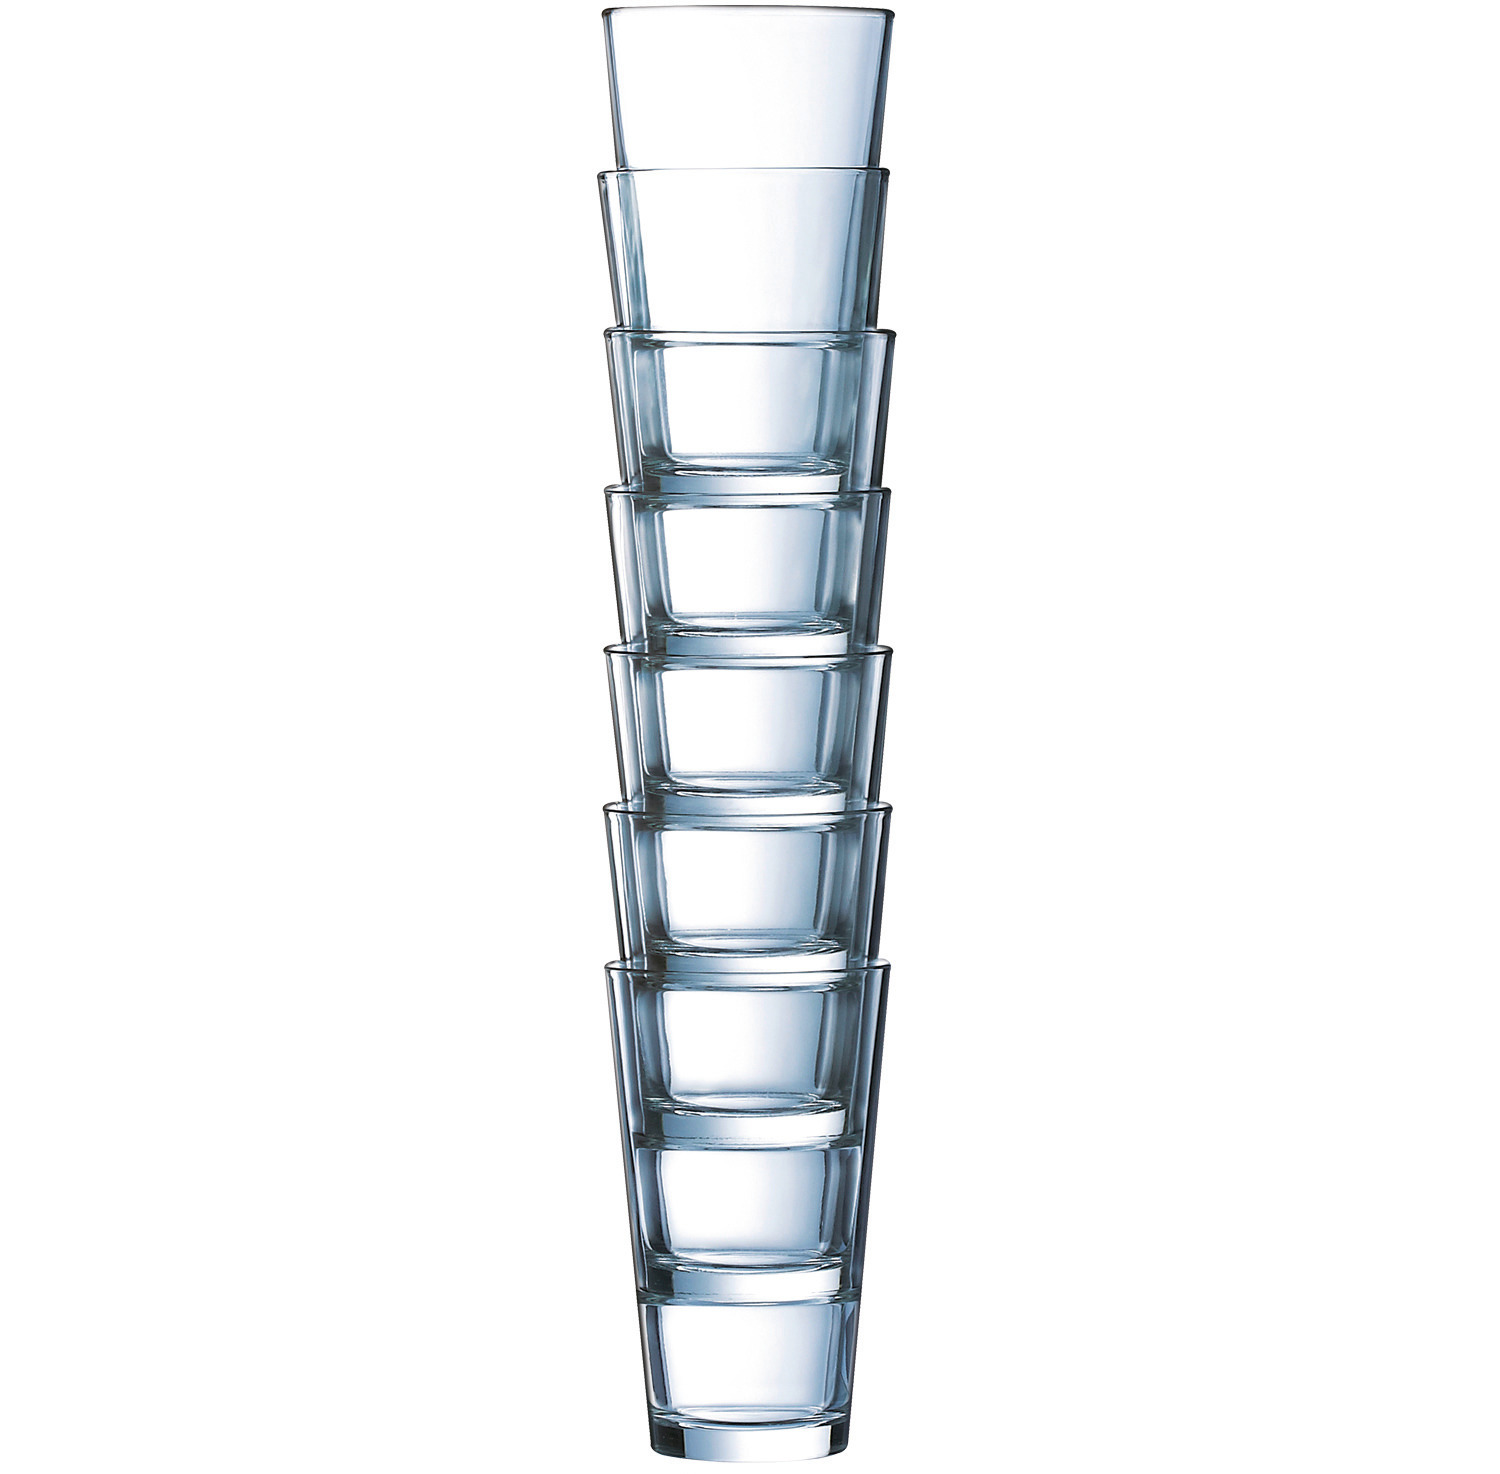 Longdrinkglas "FH29" stapelbar 76 mm / 0,29 l 0,20 /-/ transparent